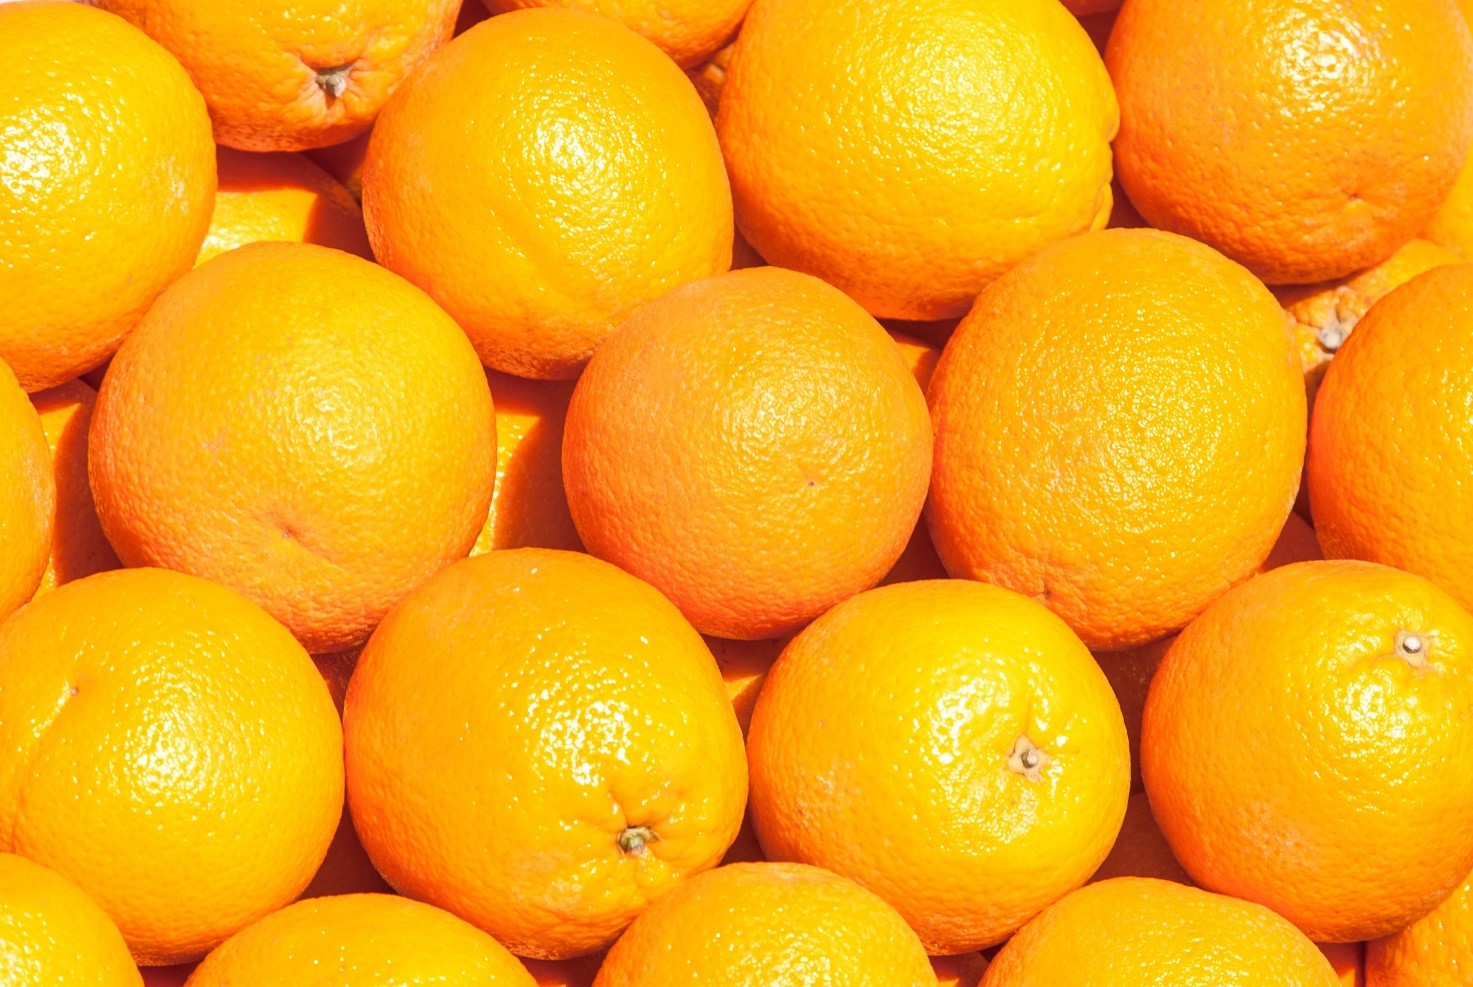 Mercadona finaliza la campaña de naranja y mandarina origen España comprando más de 192.000 toneladas